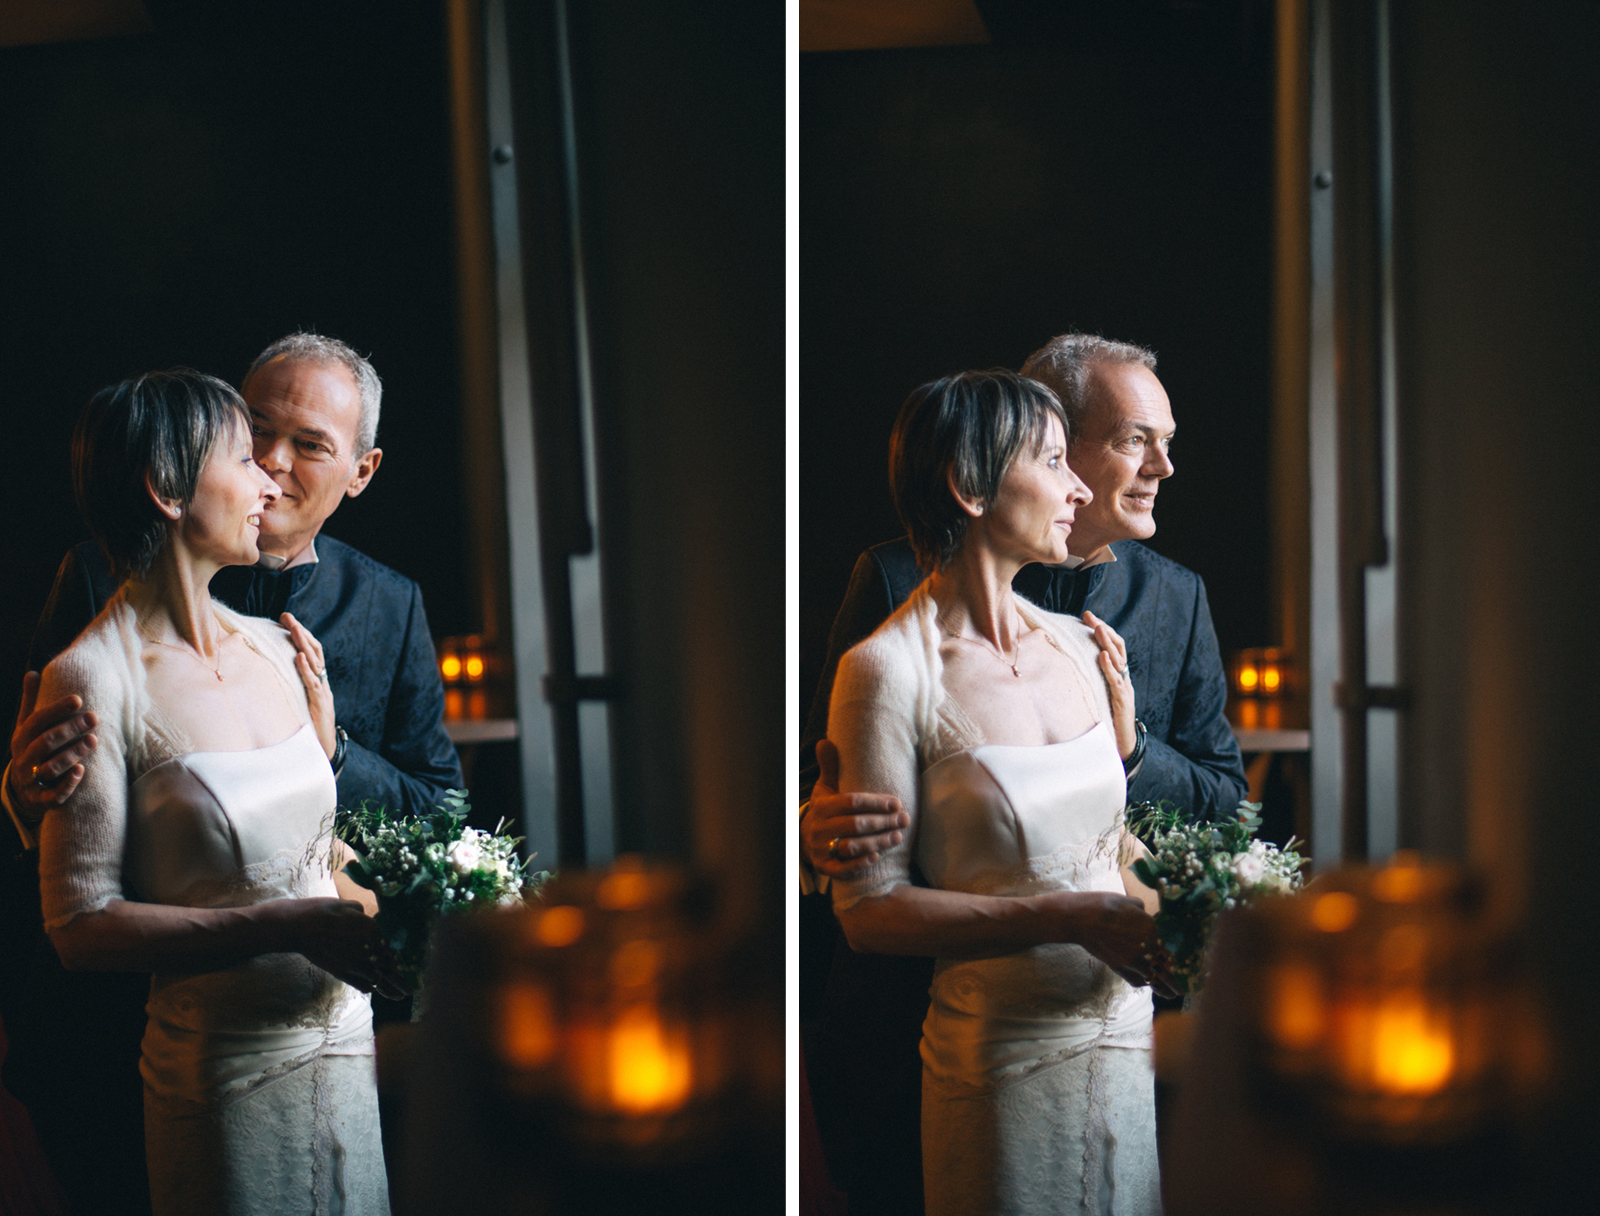 Bräutigam flüstert Braut etwas ins Ohr und beide sehen aus dem Fenster